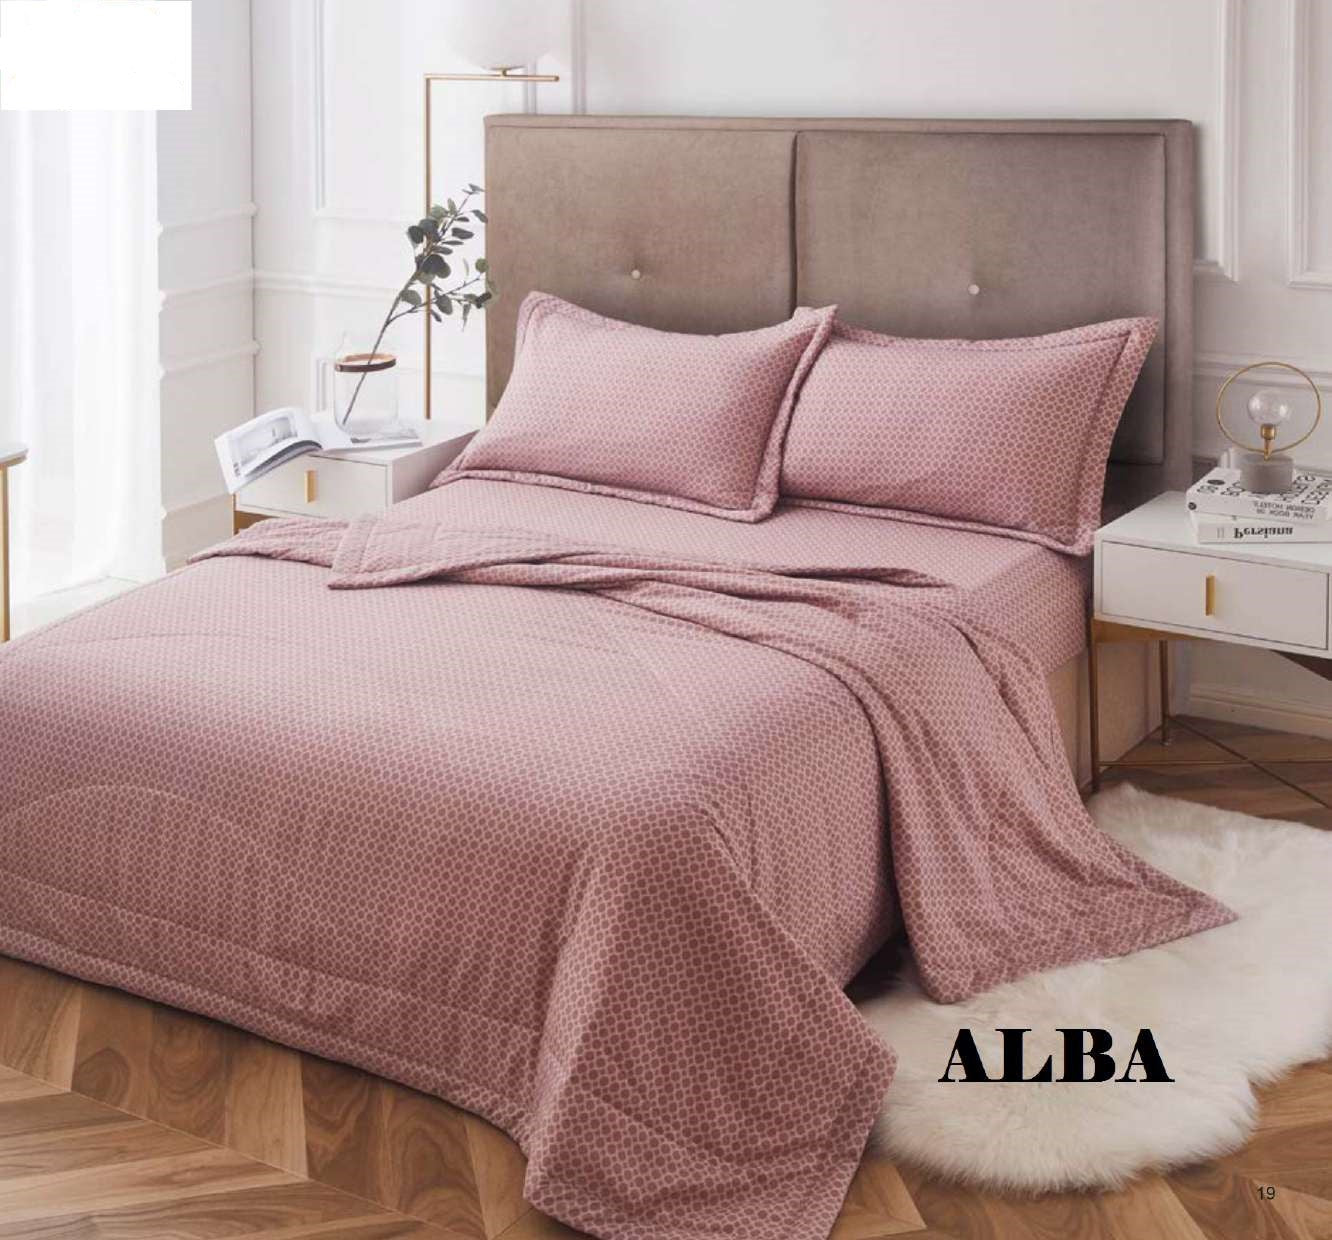 Tête de lit rembourrée - ALBA